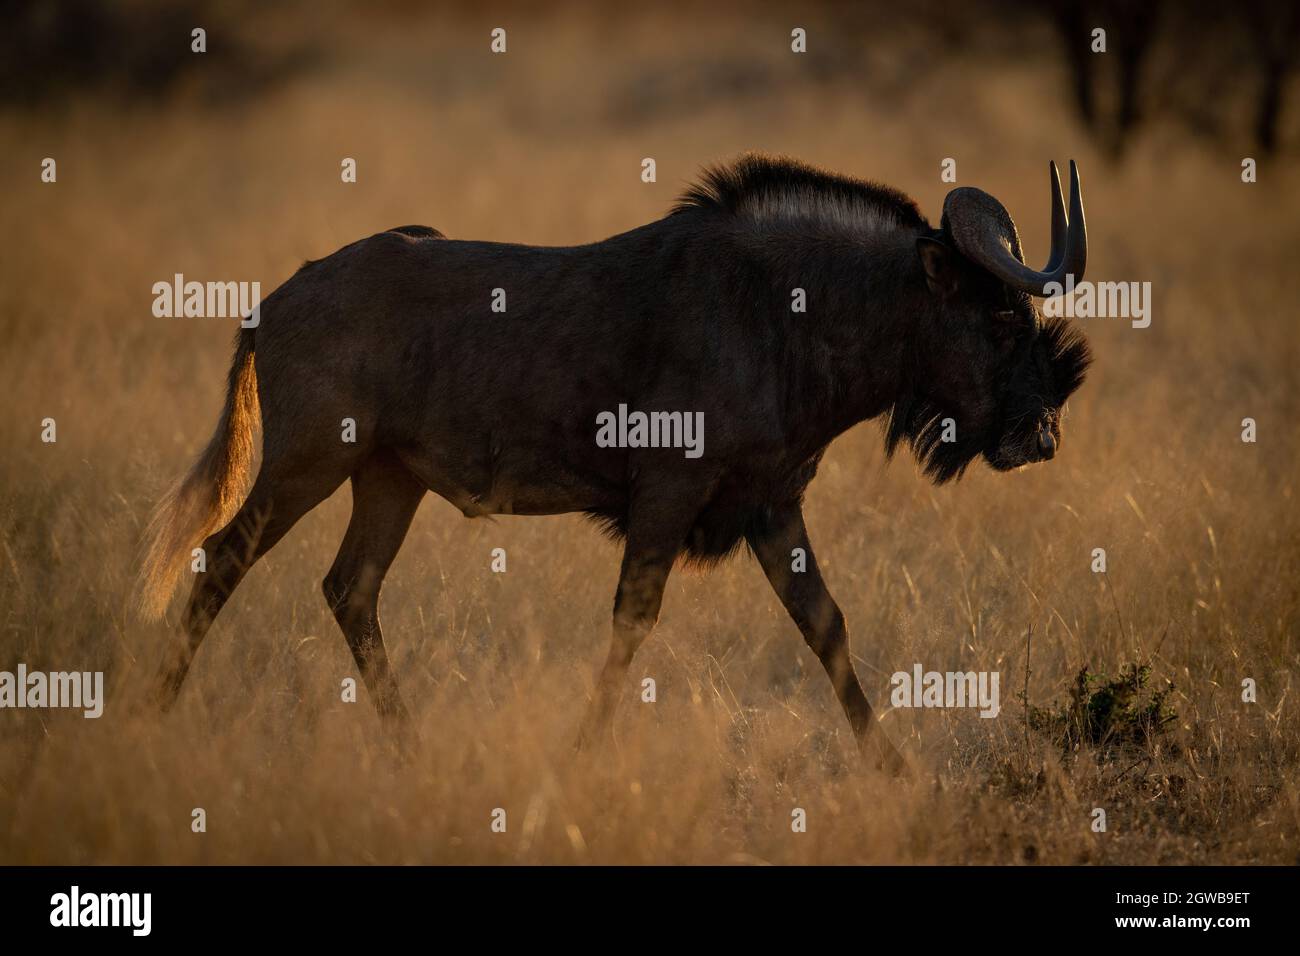 Black Wildebeest Walks On Grass At Dawn Stock Photo